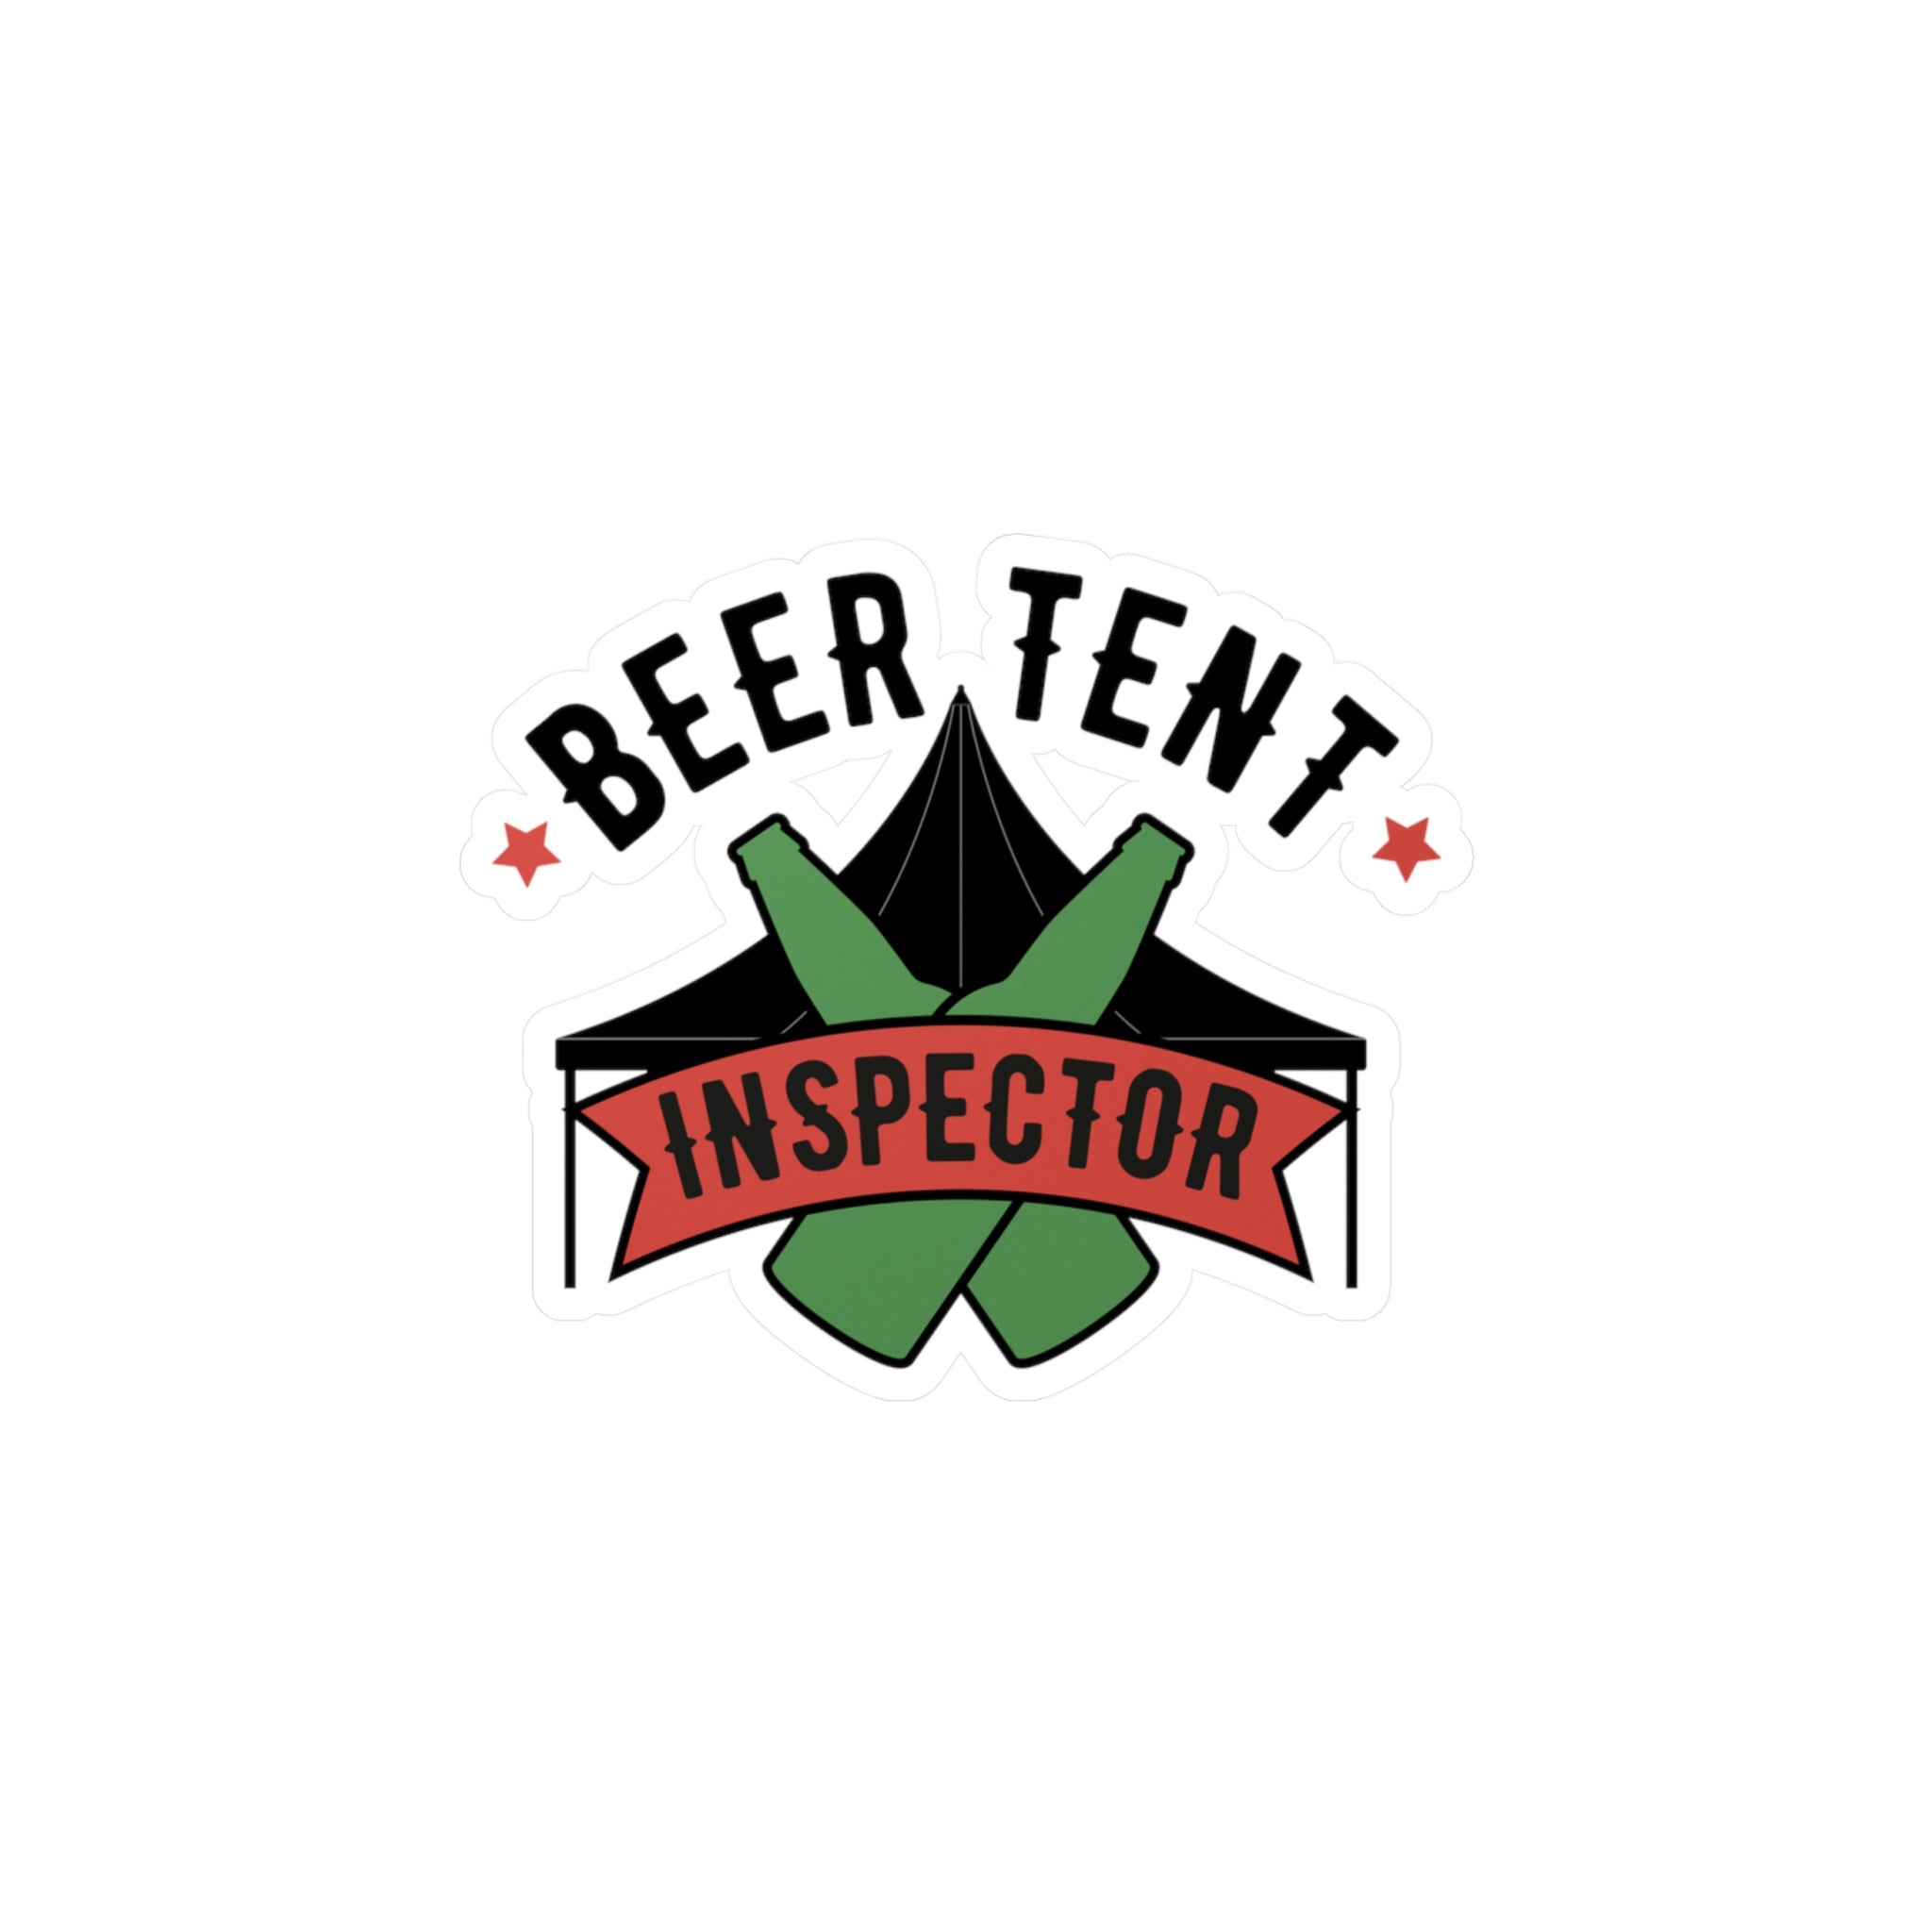 Beer Tent Inspector - Kiss-Cut Vinyl Decals - Yinzylvania